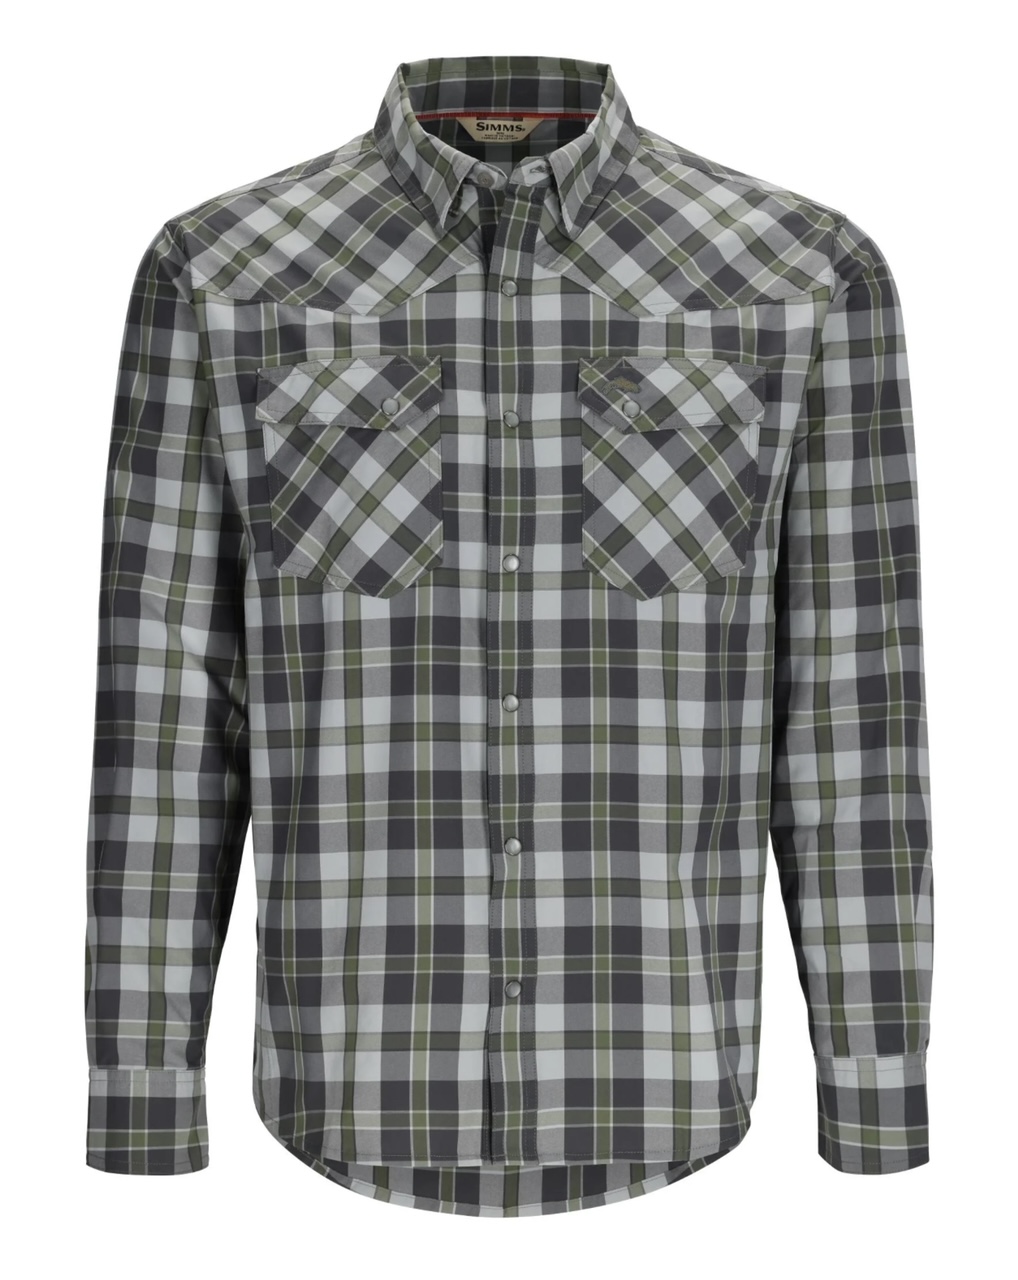 Simms M's Brackett LS Shirt - Backcountry Clover Plaid - XL